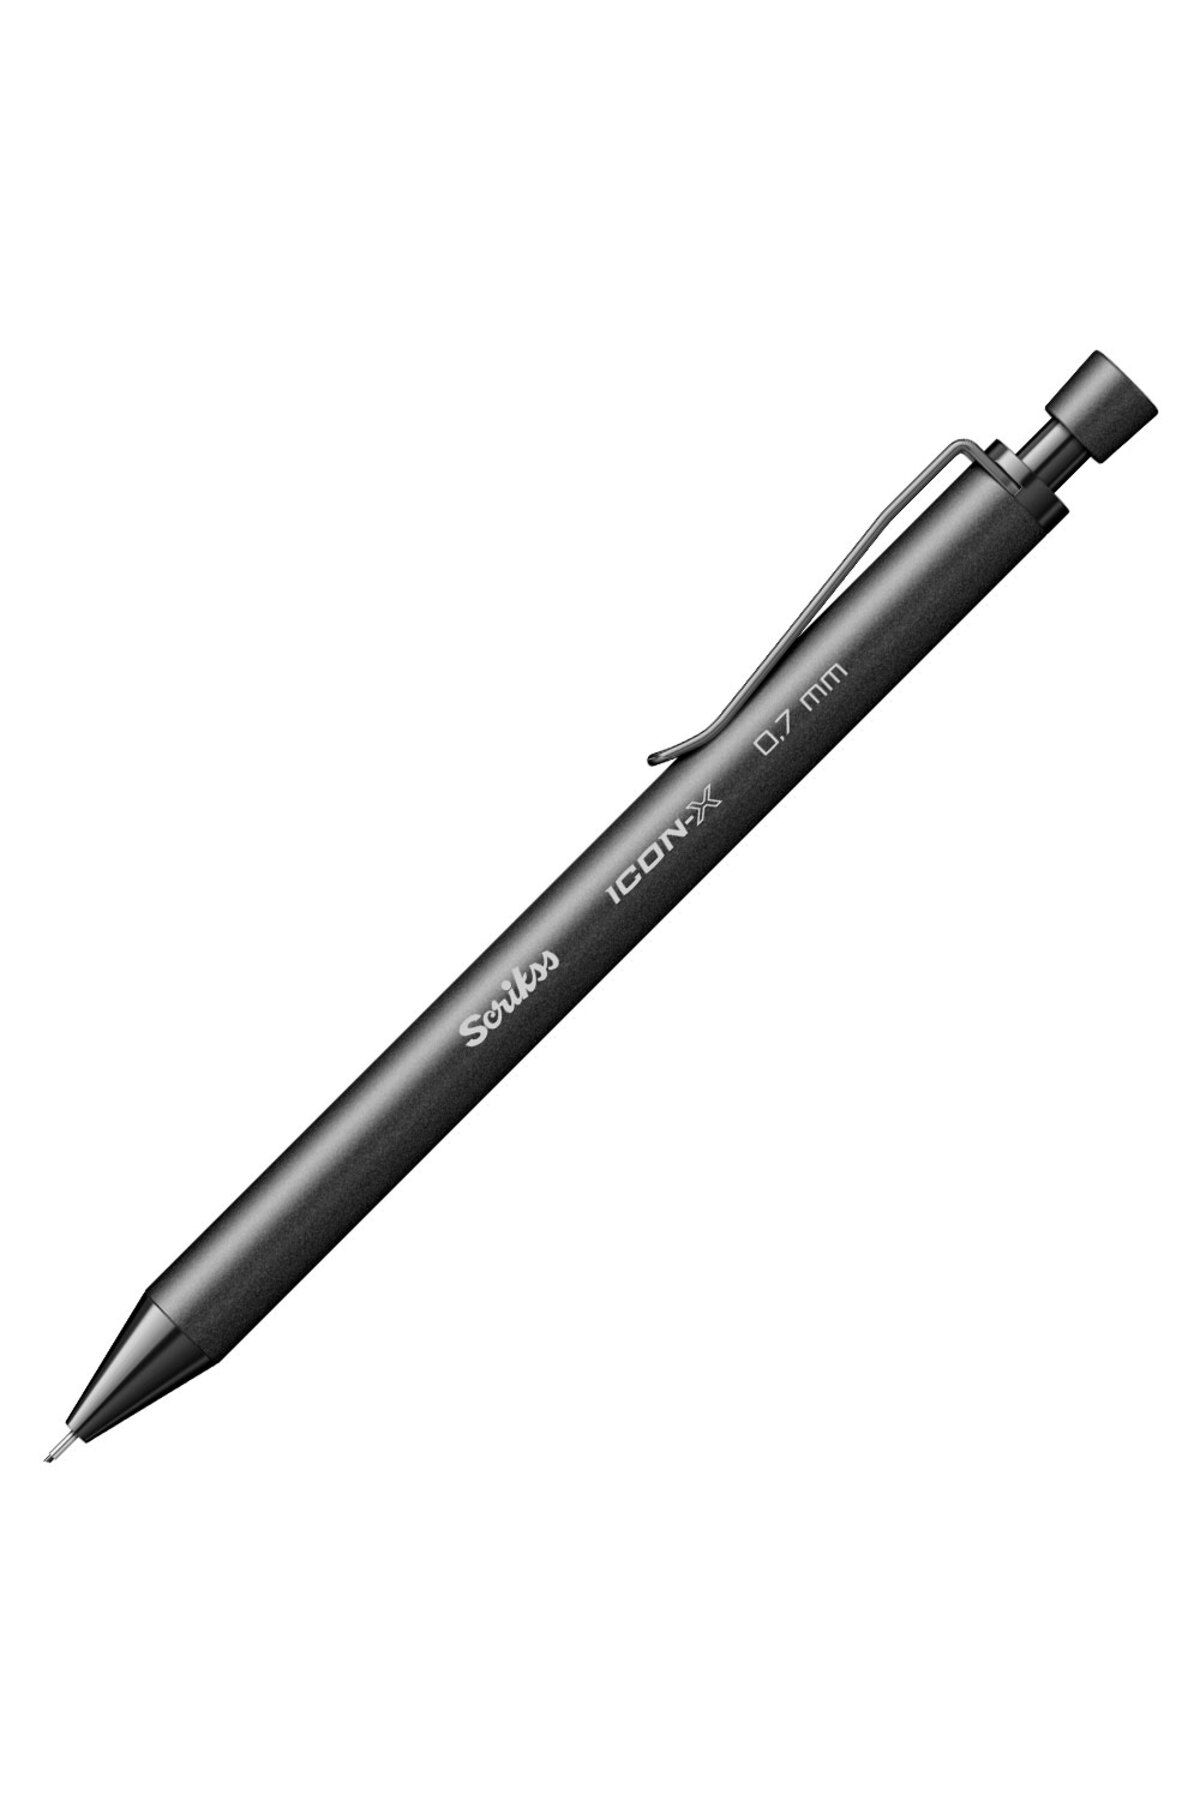 Scrikss Versatil Kalem (Mekanik Kurşun Kalem) İcon-X Metal 0.7 Mm Siyah (12 Li Paket)